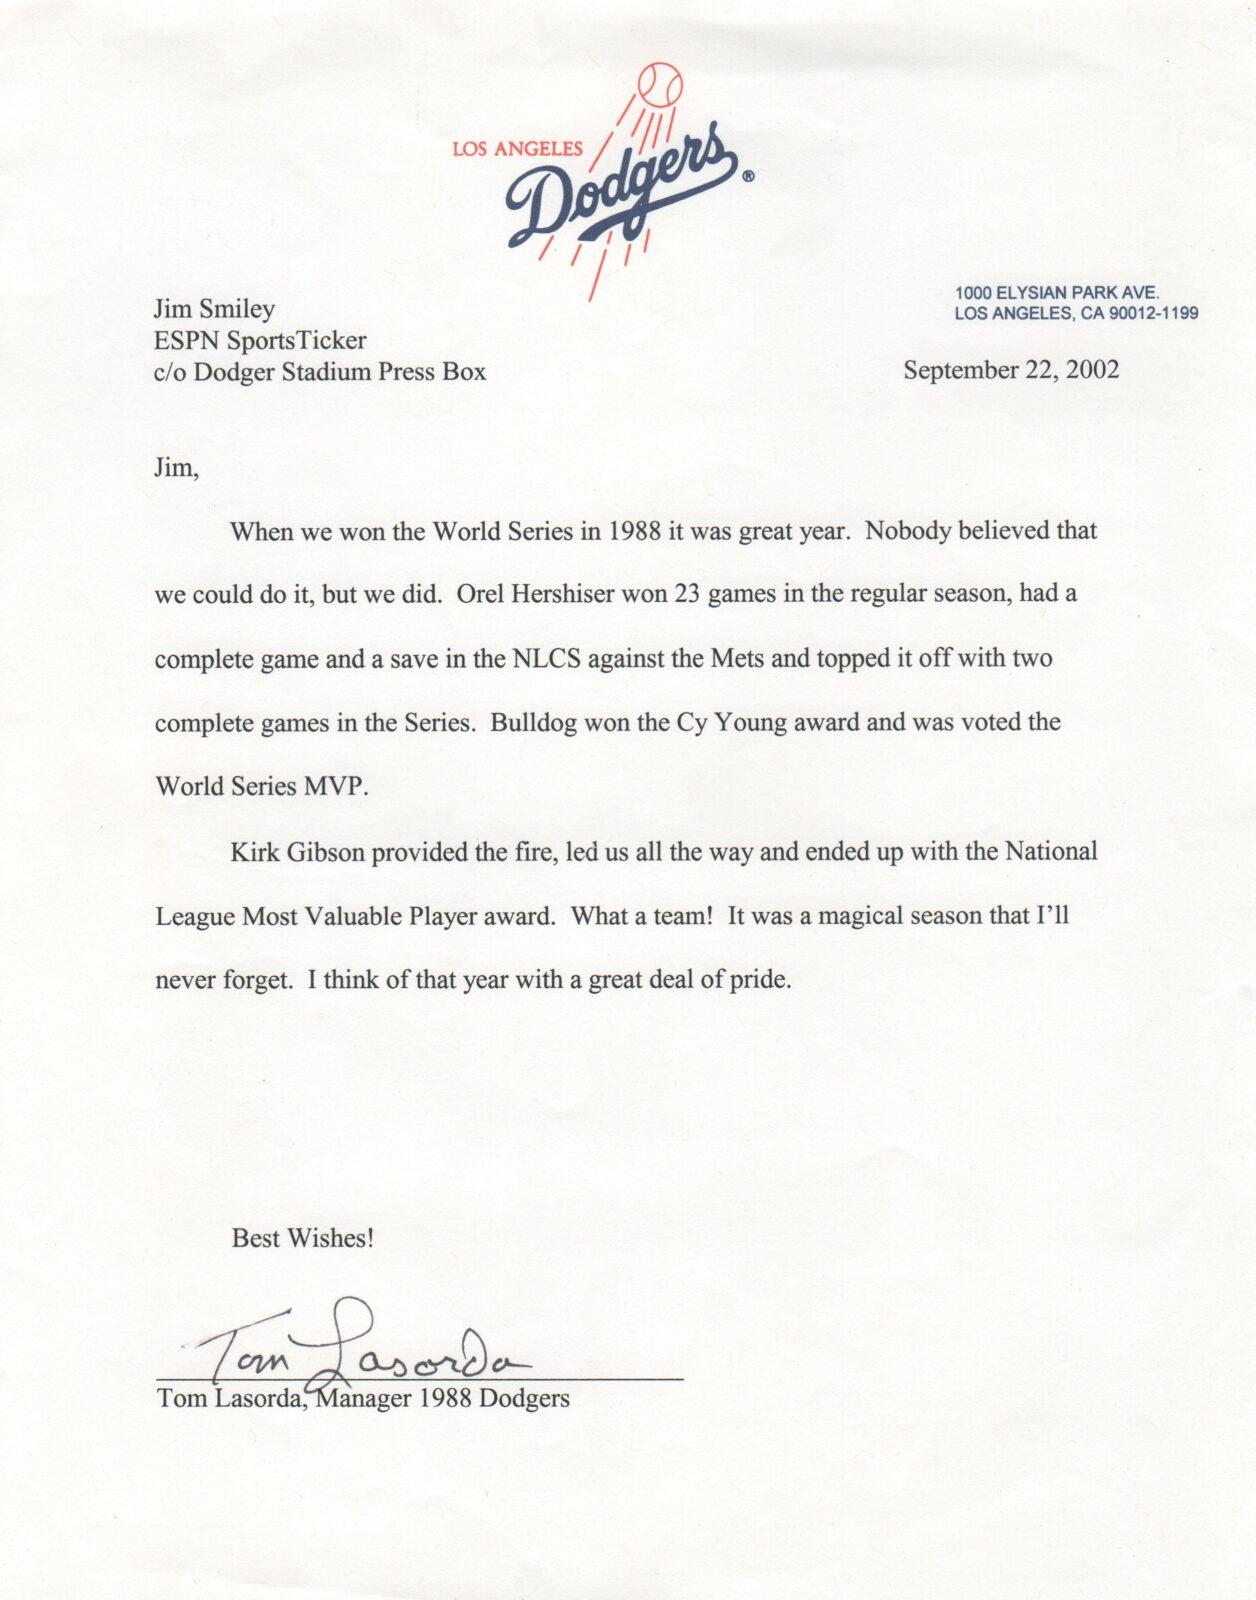 1988 Dodgers remember Tommy Lasorda